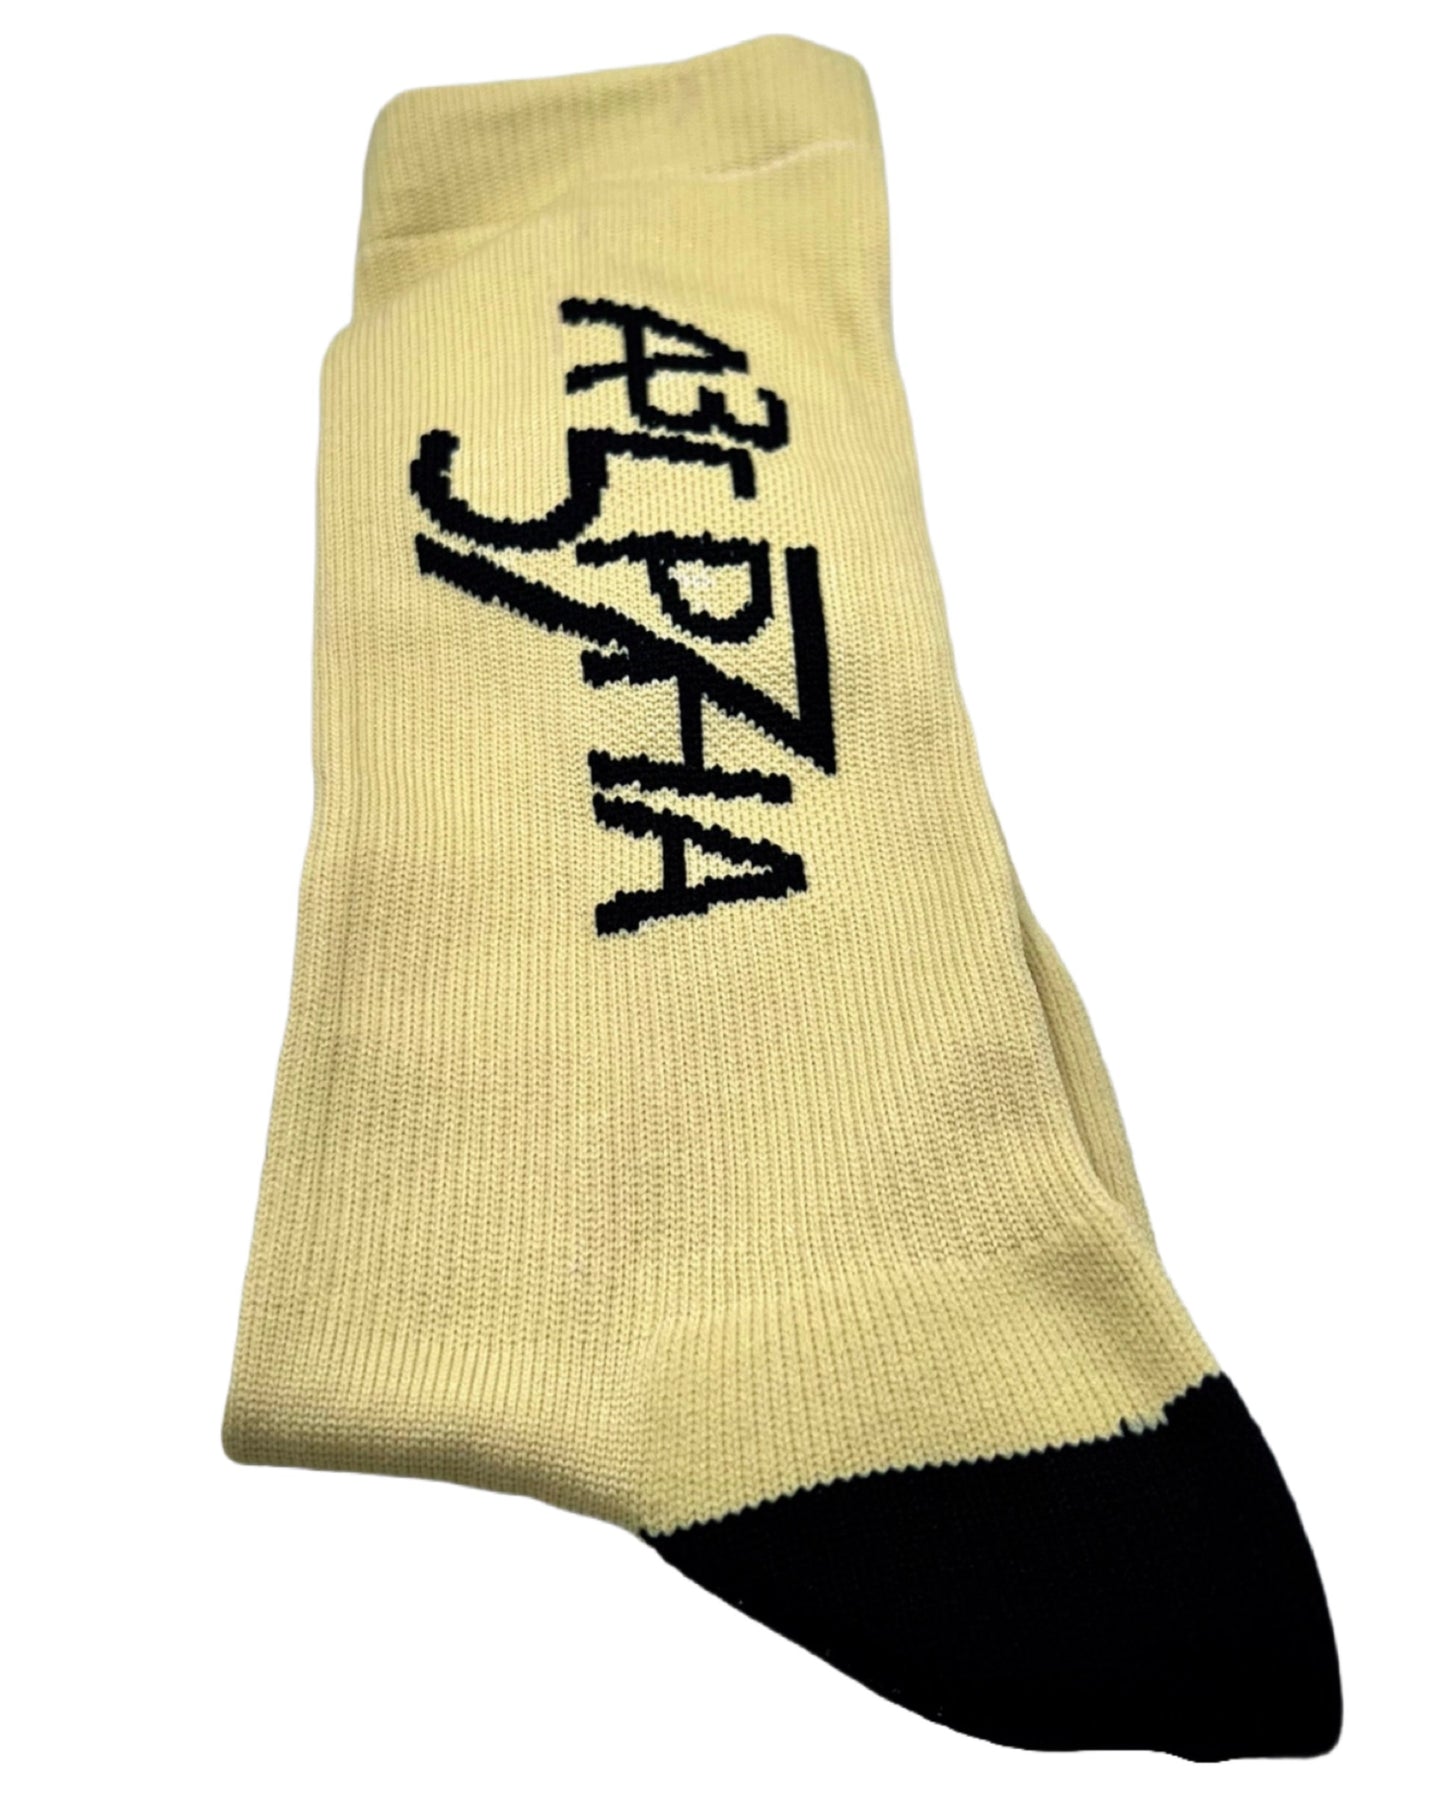 AAHLPHA Logo Socks